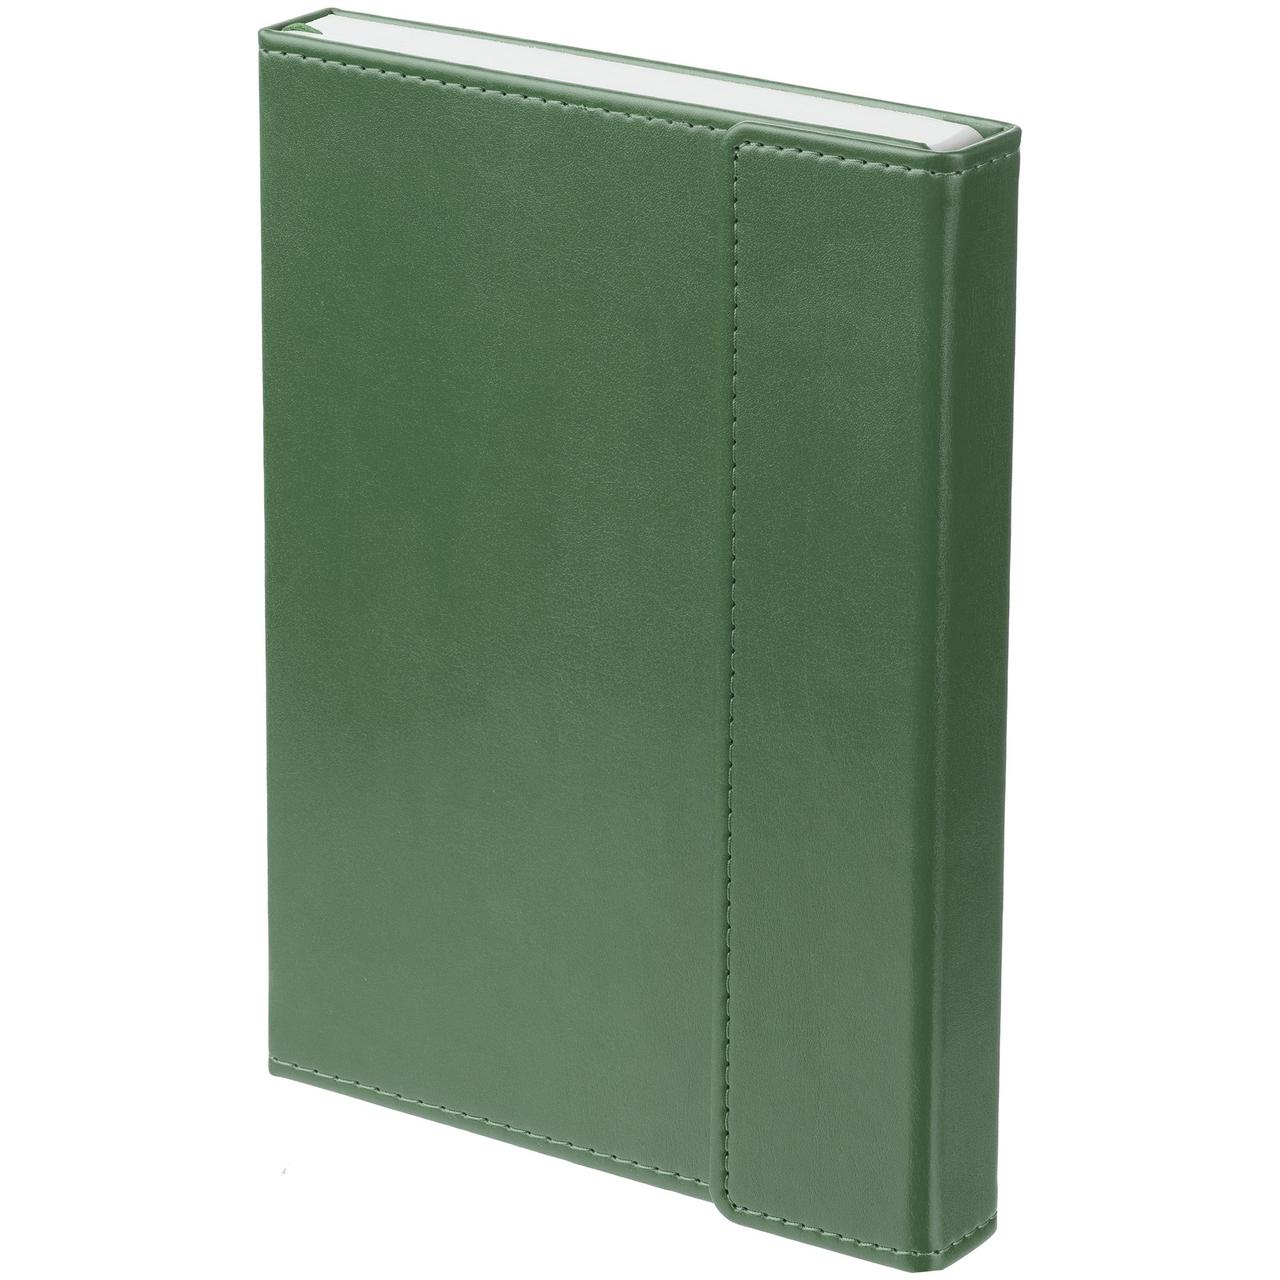 Ежедневник Flap, ver.2, недатированный, зеленый (артикул 16684.90), фото 1